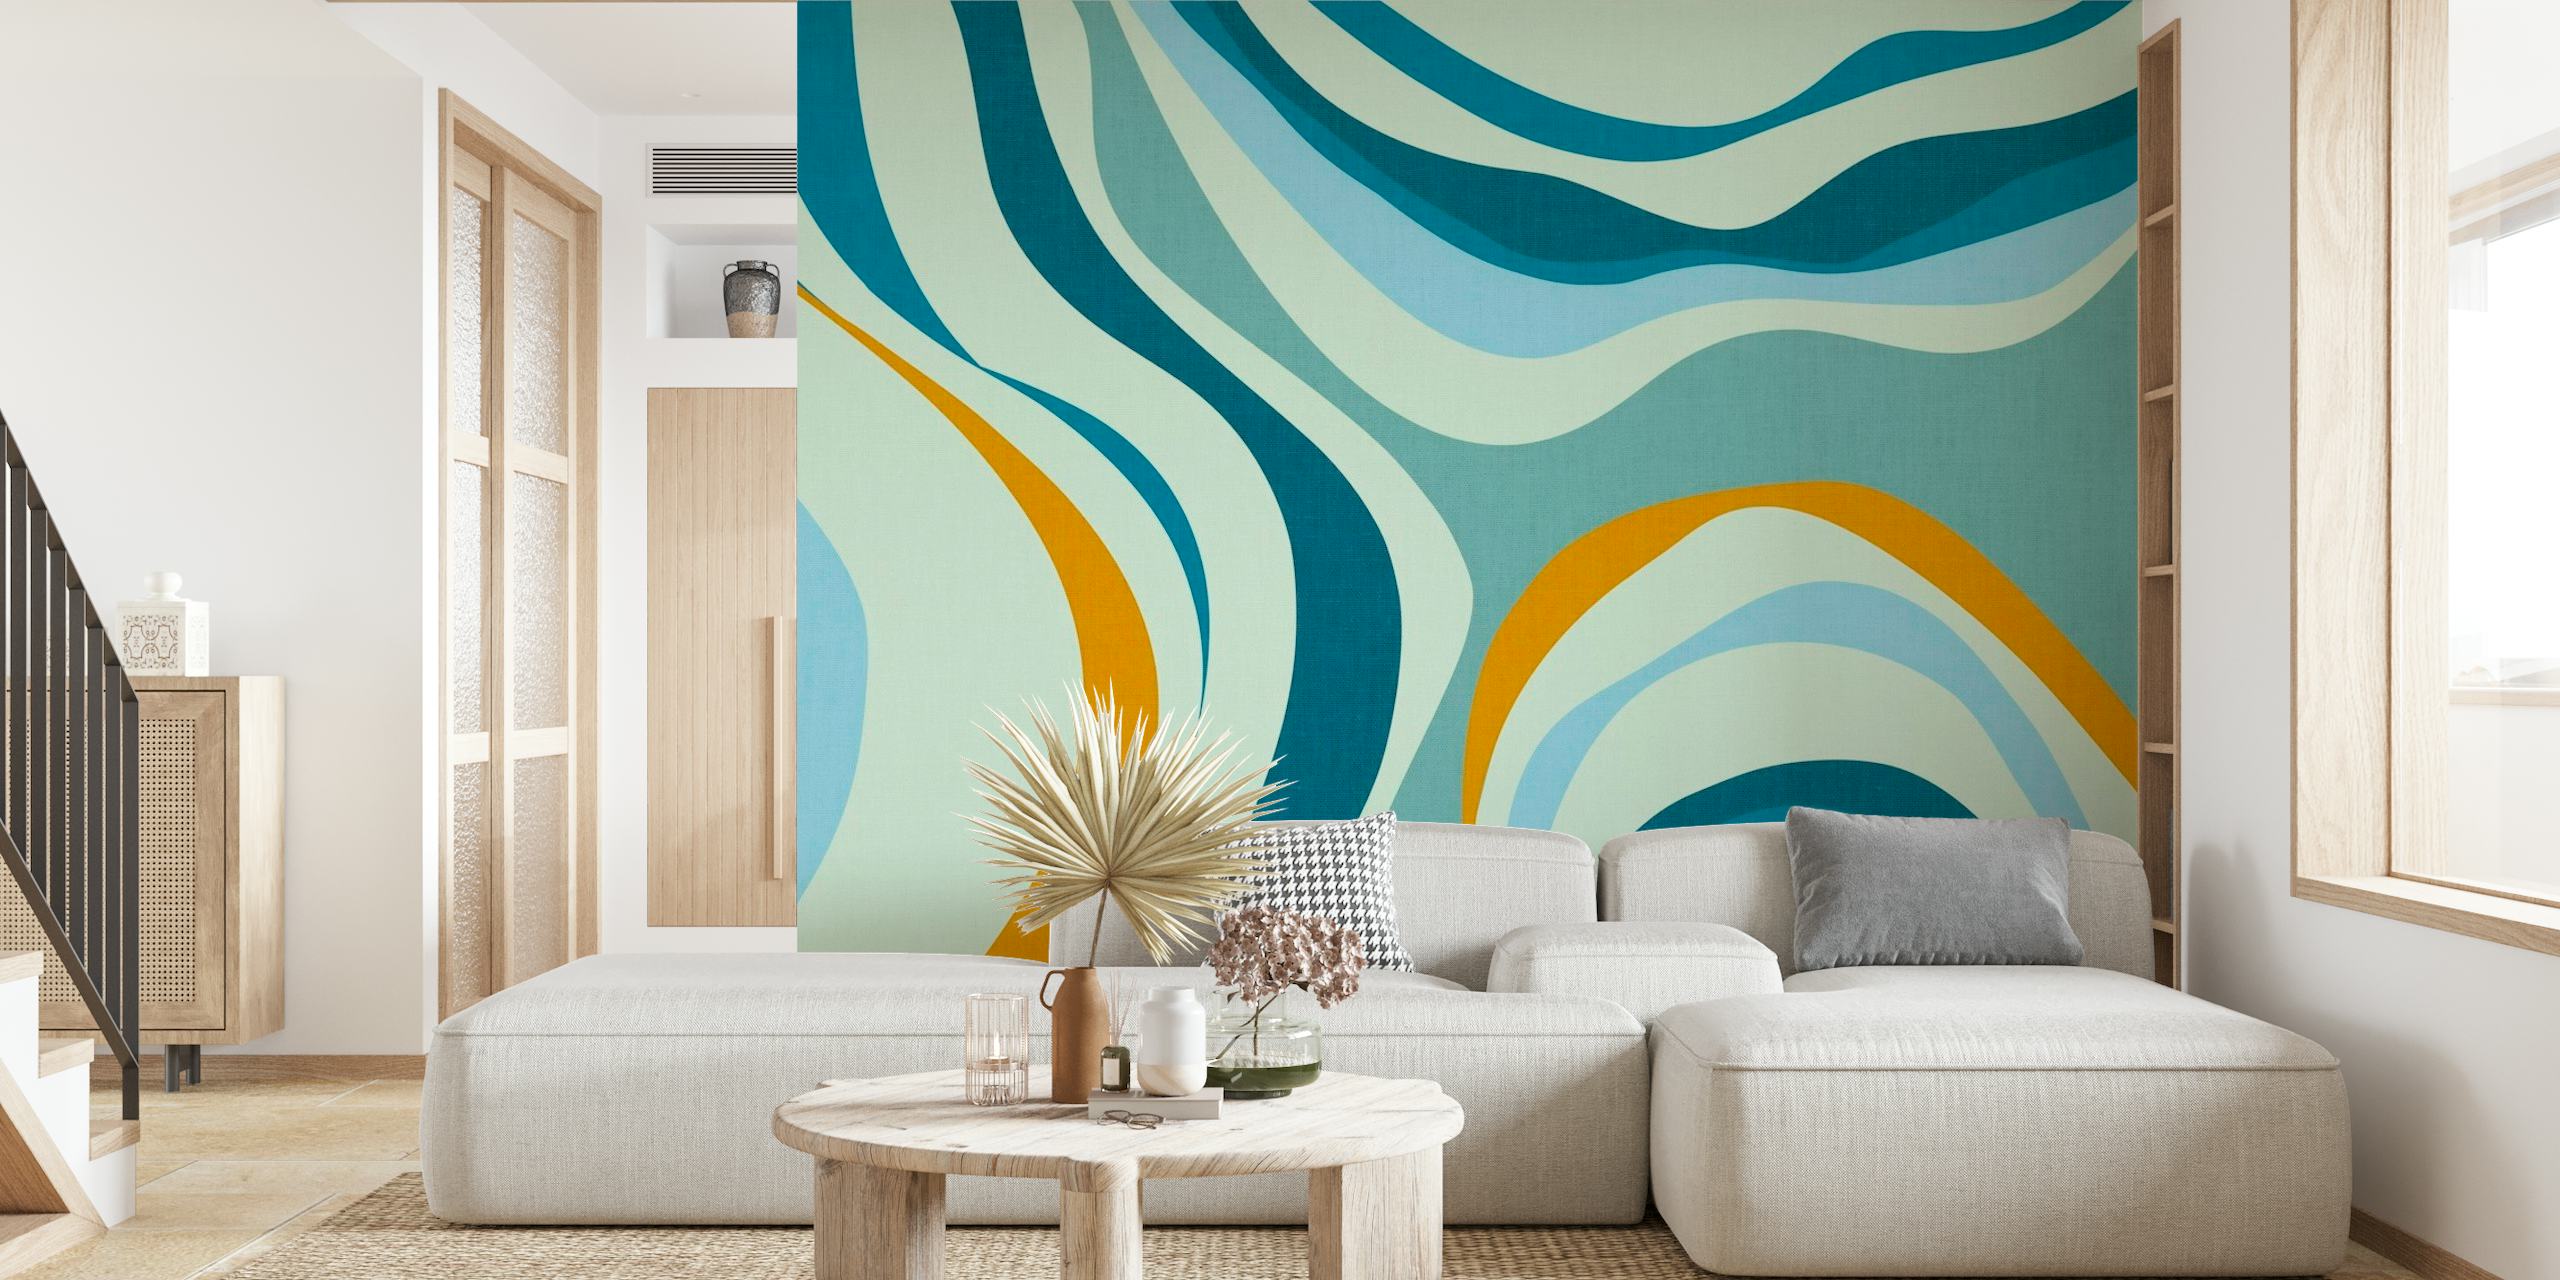 Zidna slika s plavim valovima u retro stilu s uzorcima mirne plave i pješčane boje